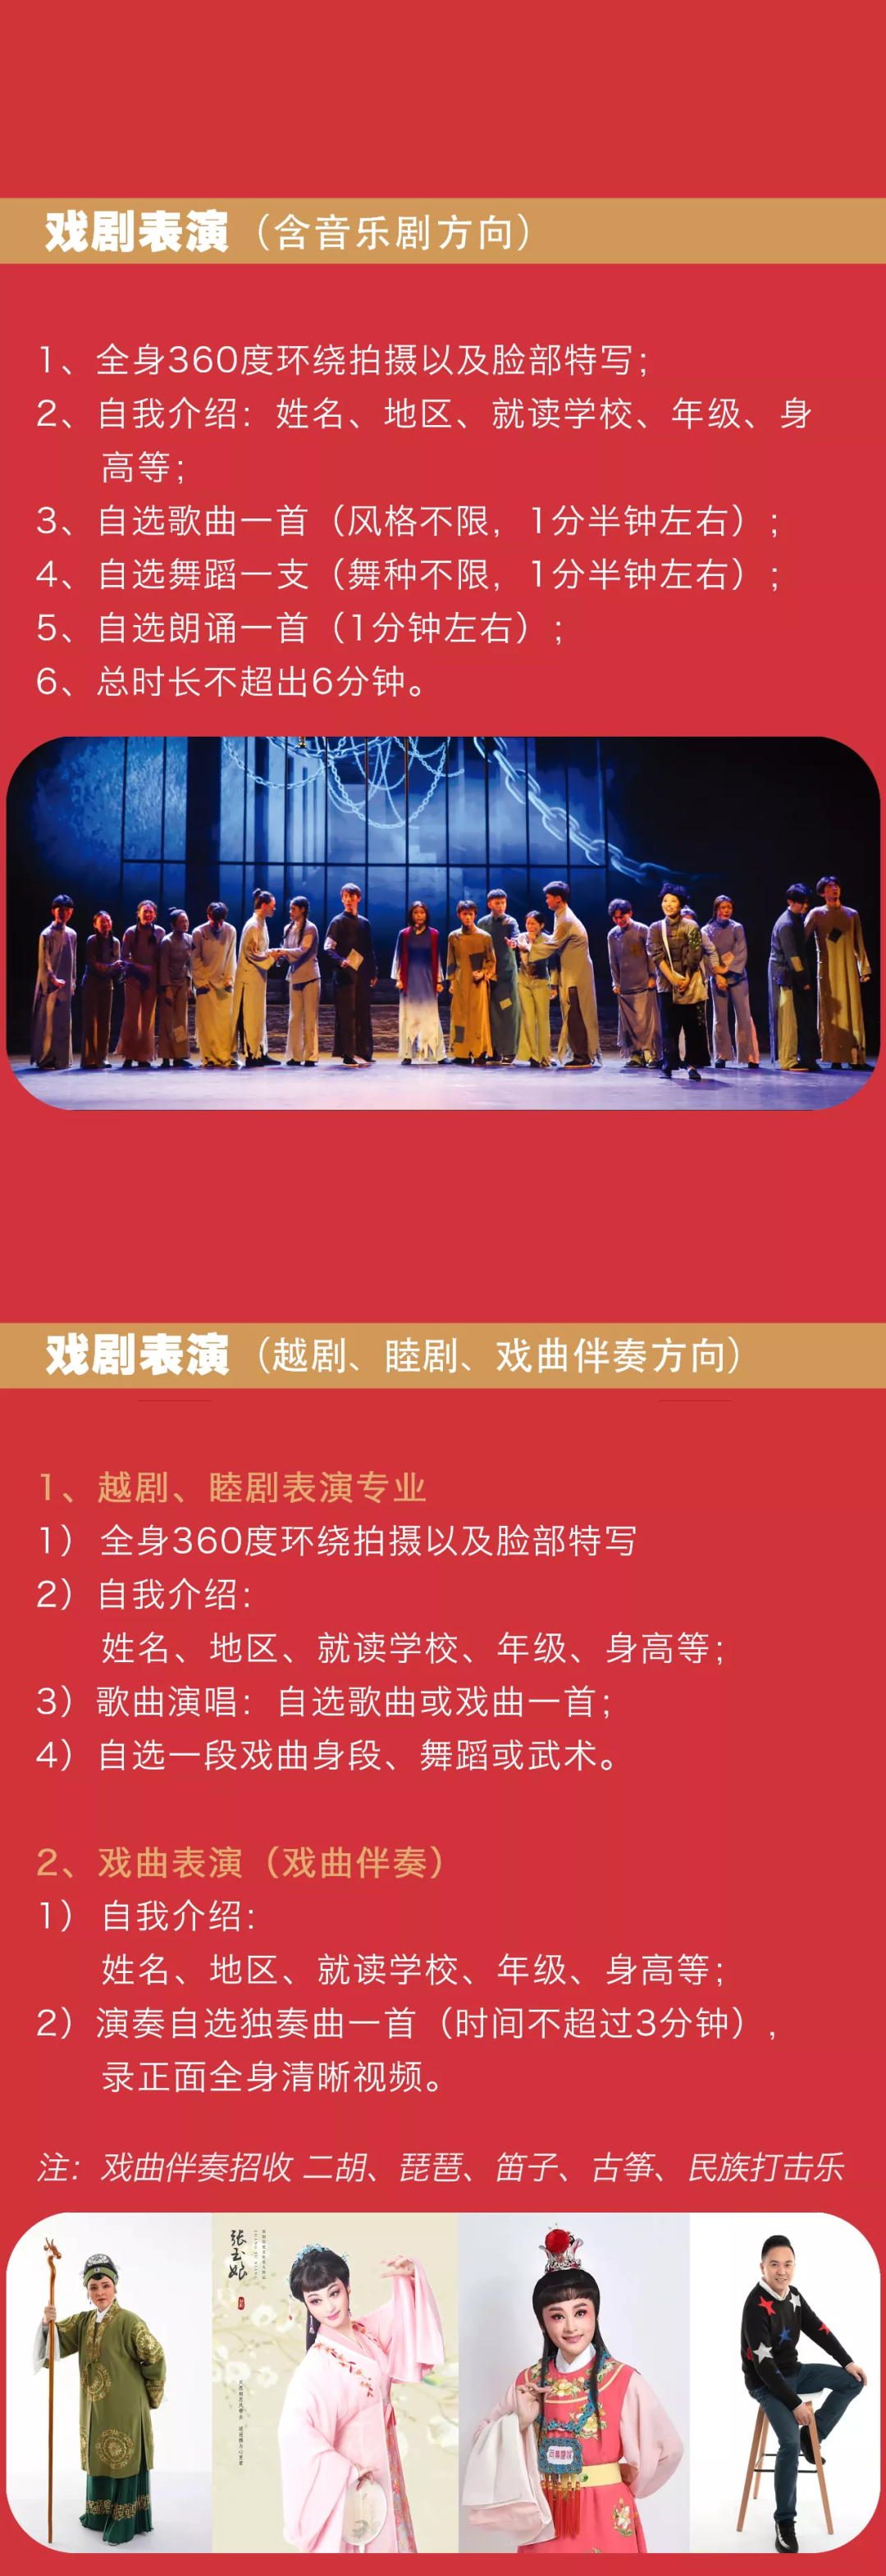 2022年杭州藝術學校招生簡章、招生對象、報考時間、考試內容及注意事項